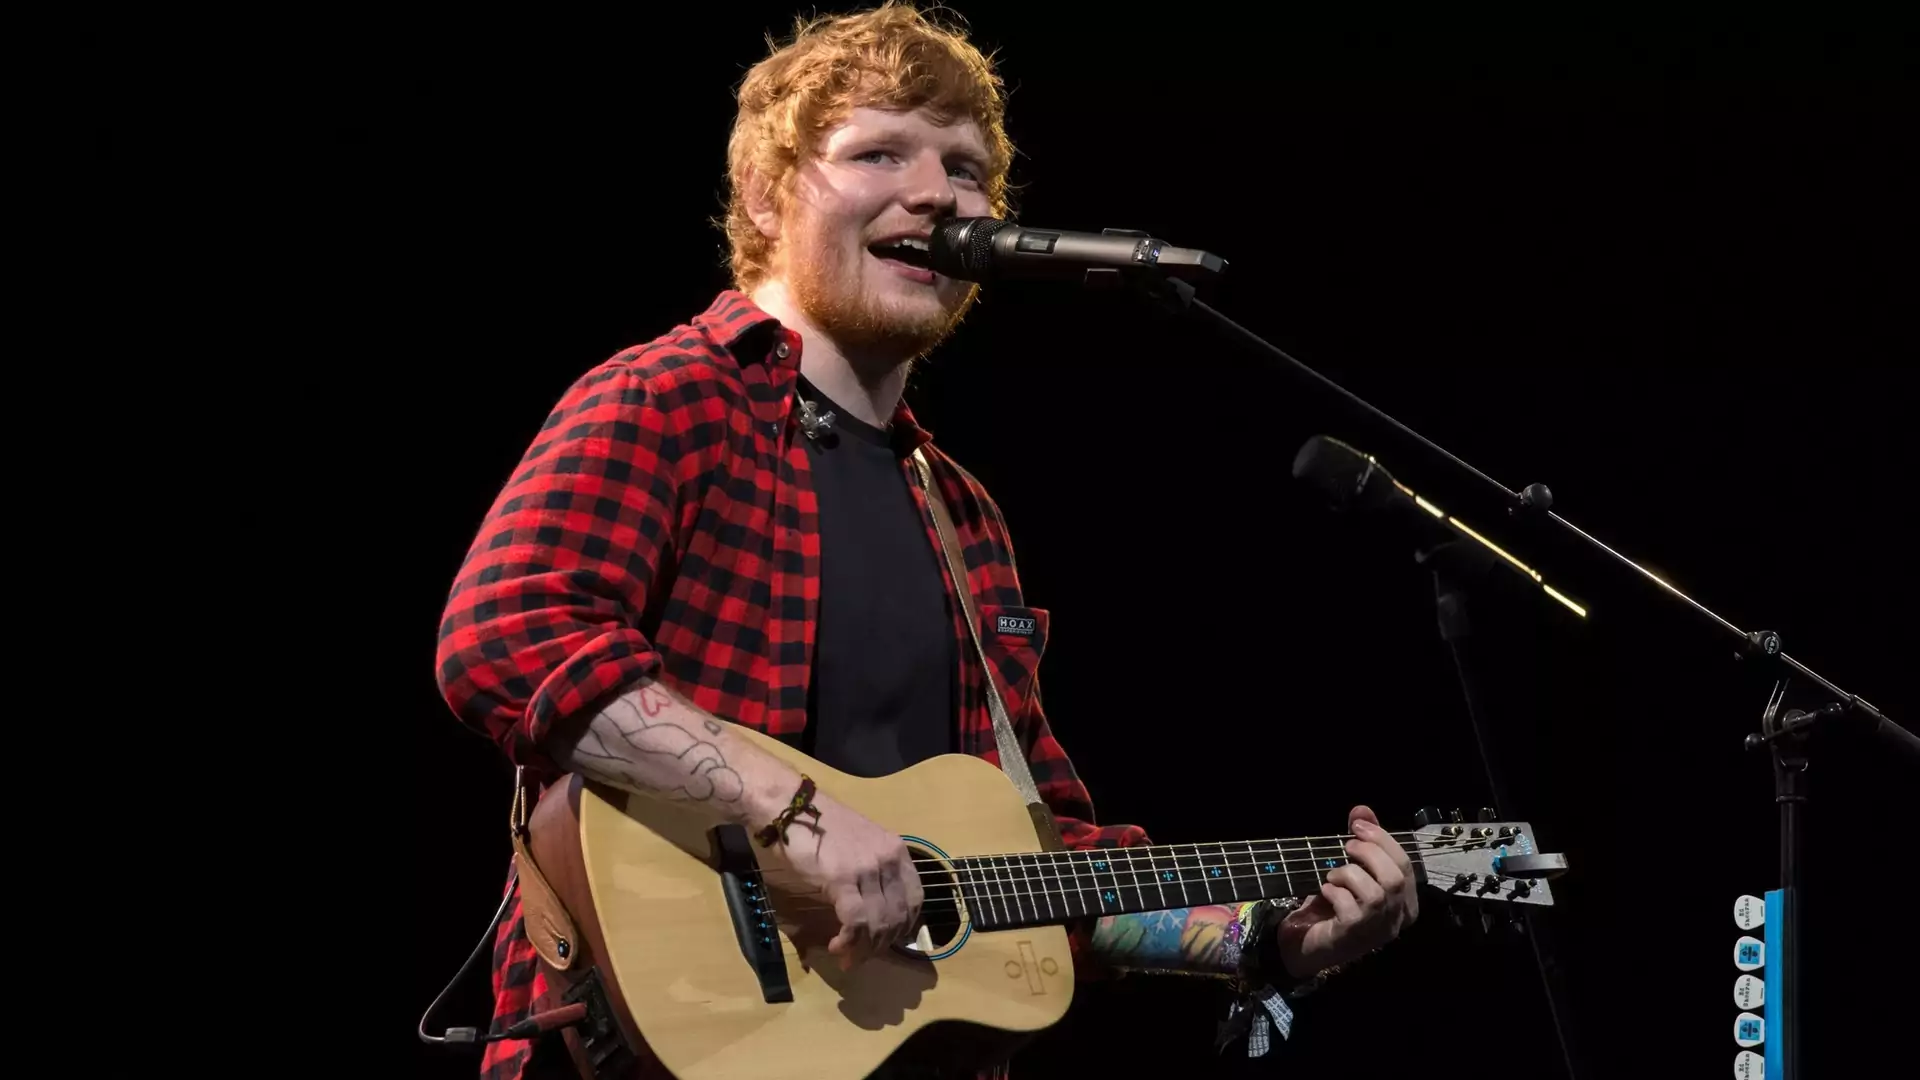 Nius dnia: Ed Sheeran zagra koncert w Polsce! Wiemy, kiedy kupisz bilet